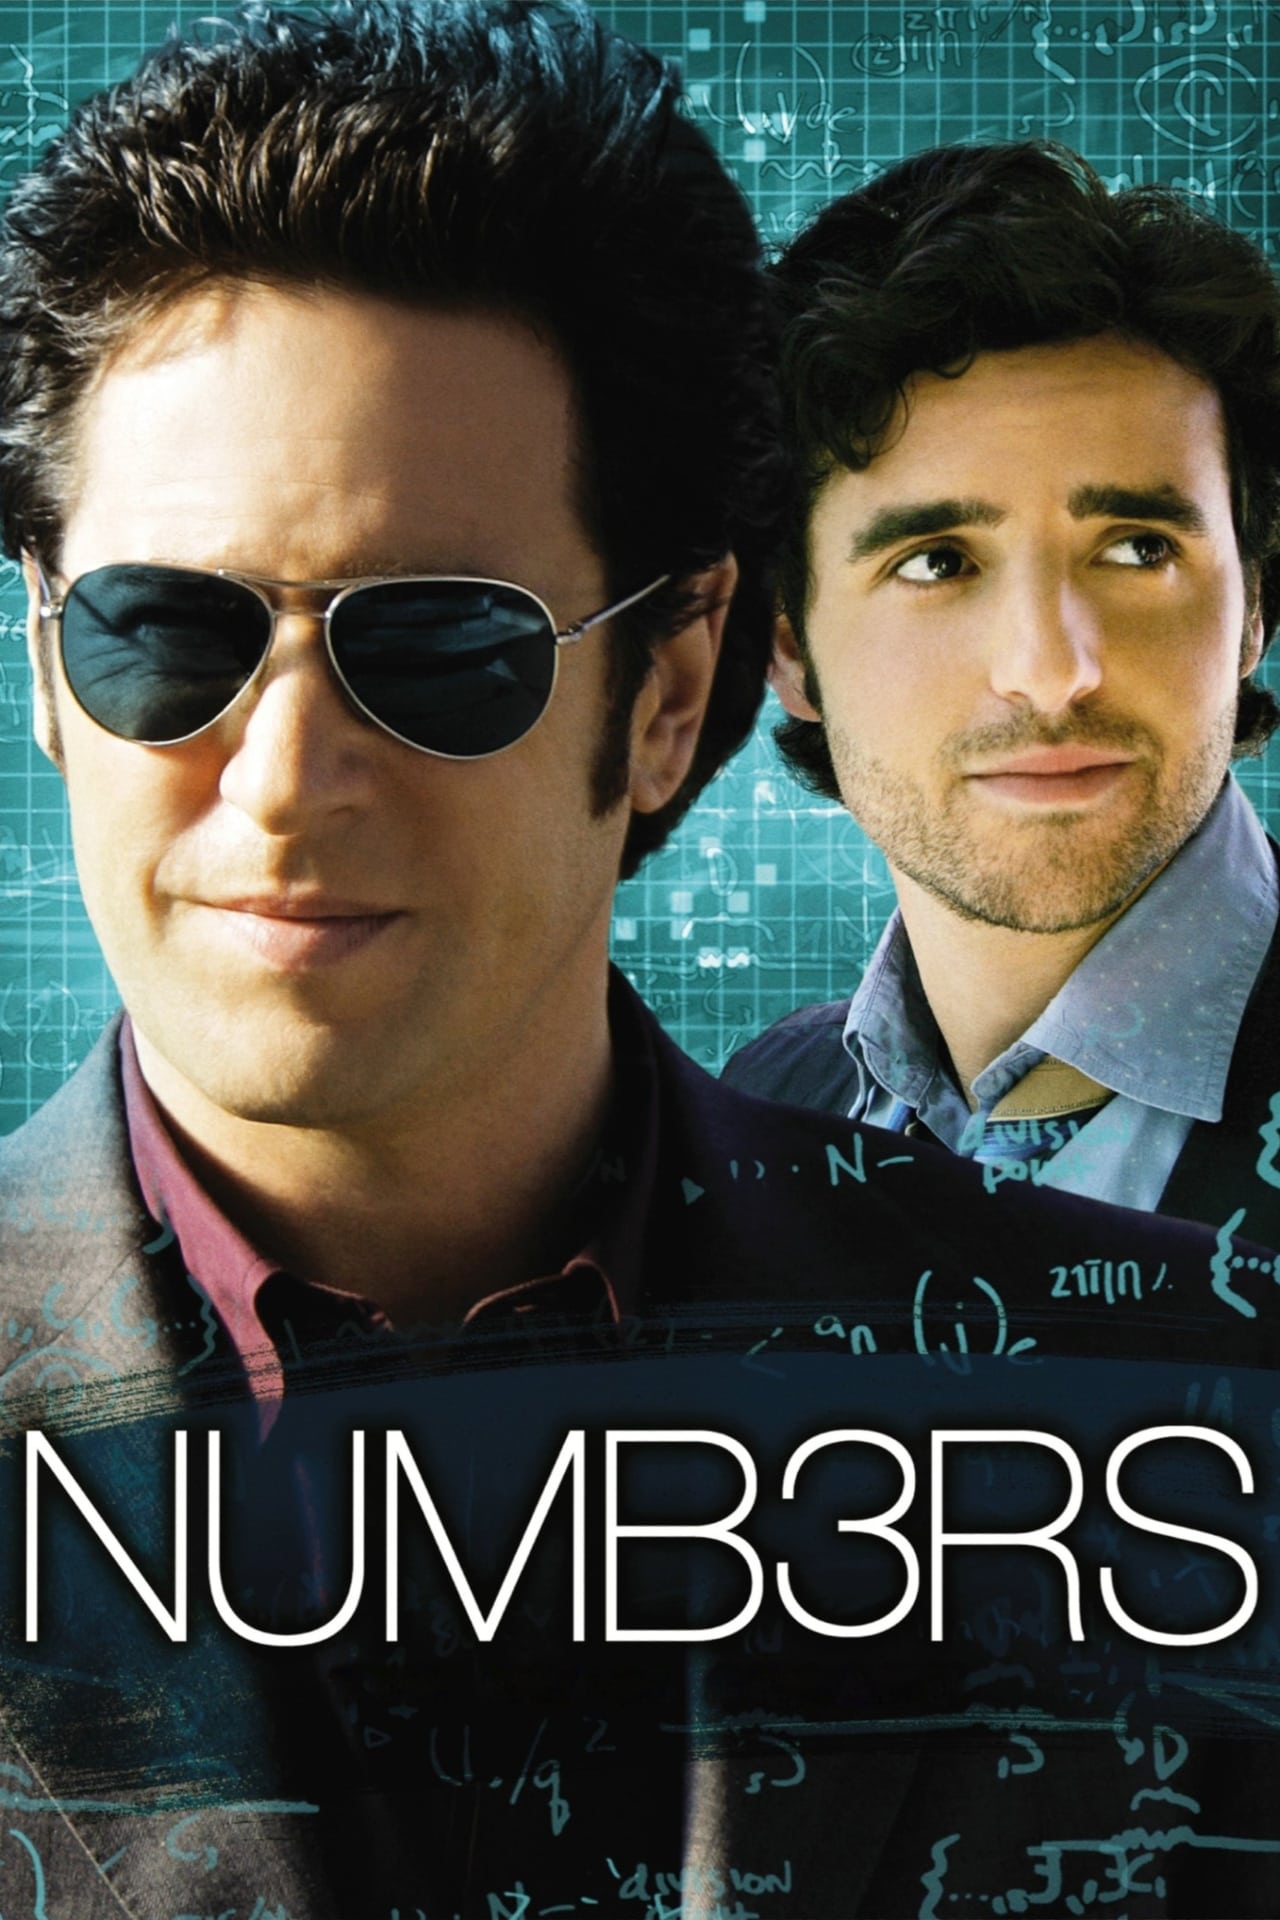 Numb3rs (season 5)